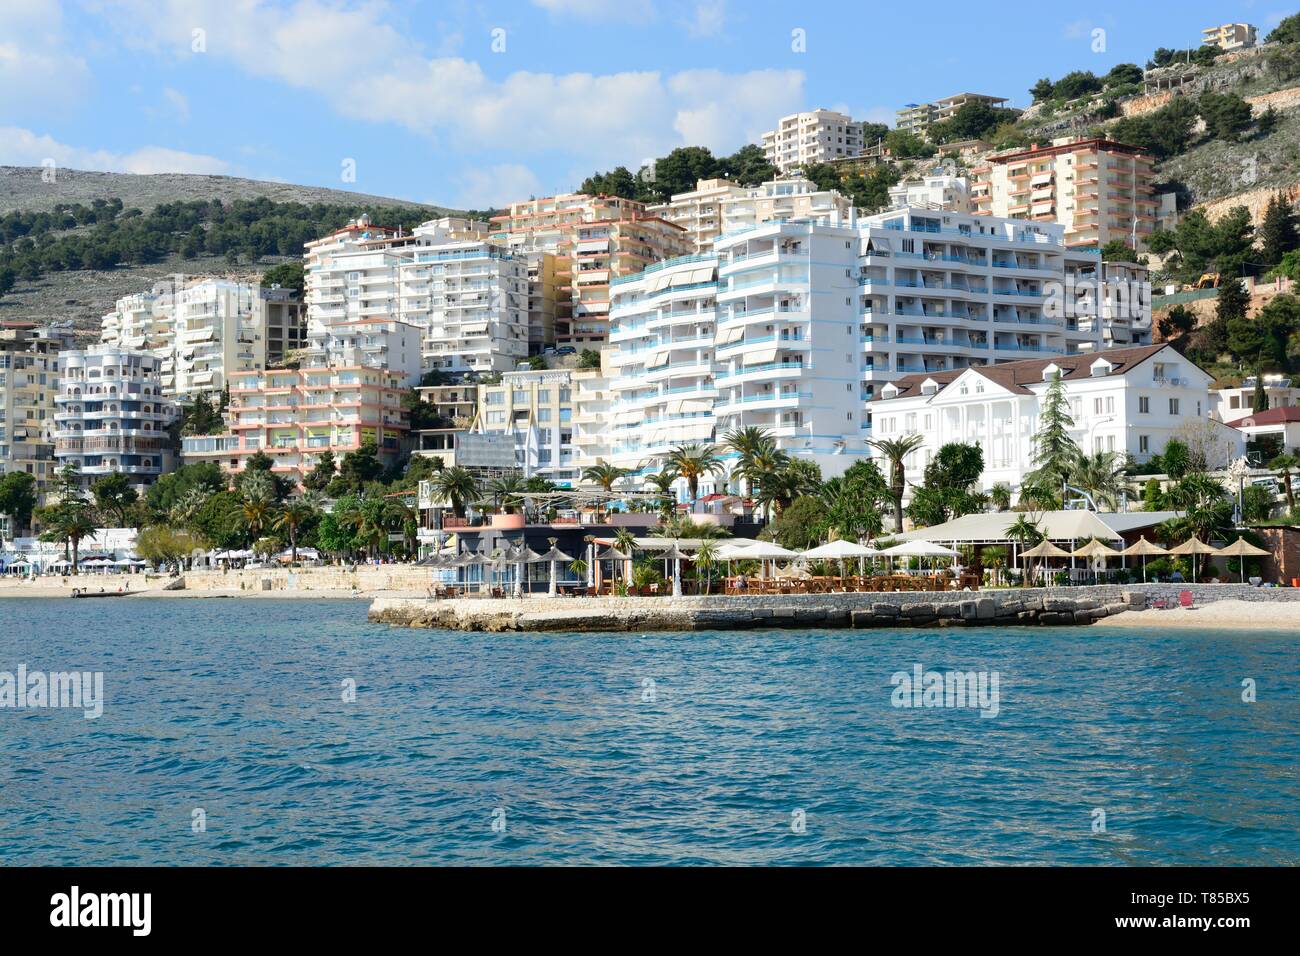 Küstenstadt von Saranda auf die albanische Riviera zu einem beliebten Reiseziel Albanien Stockfoto